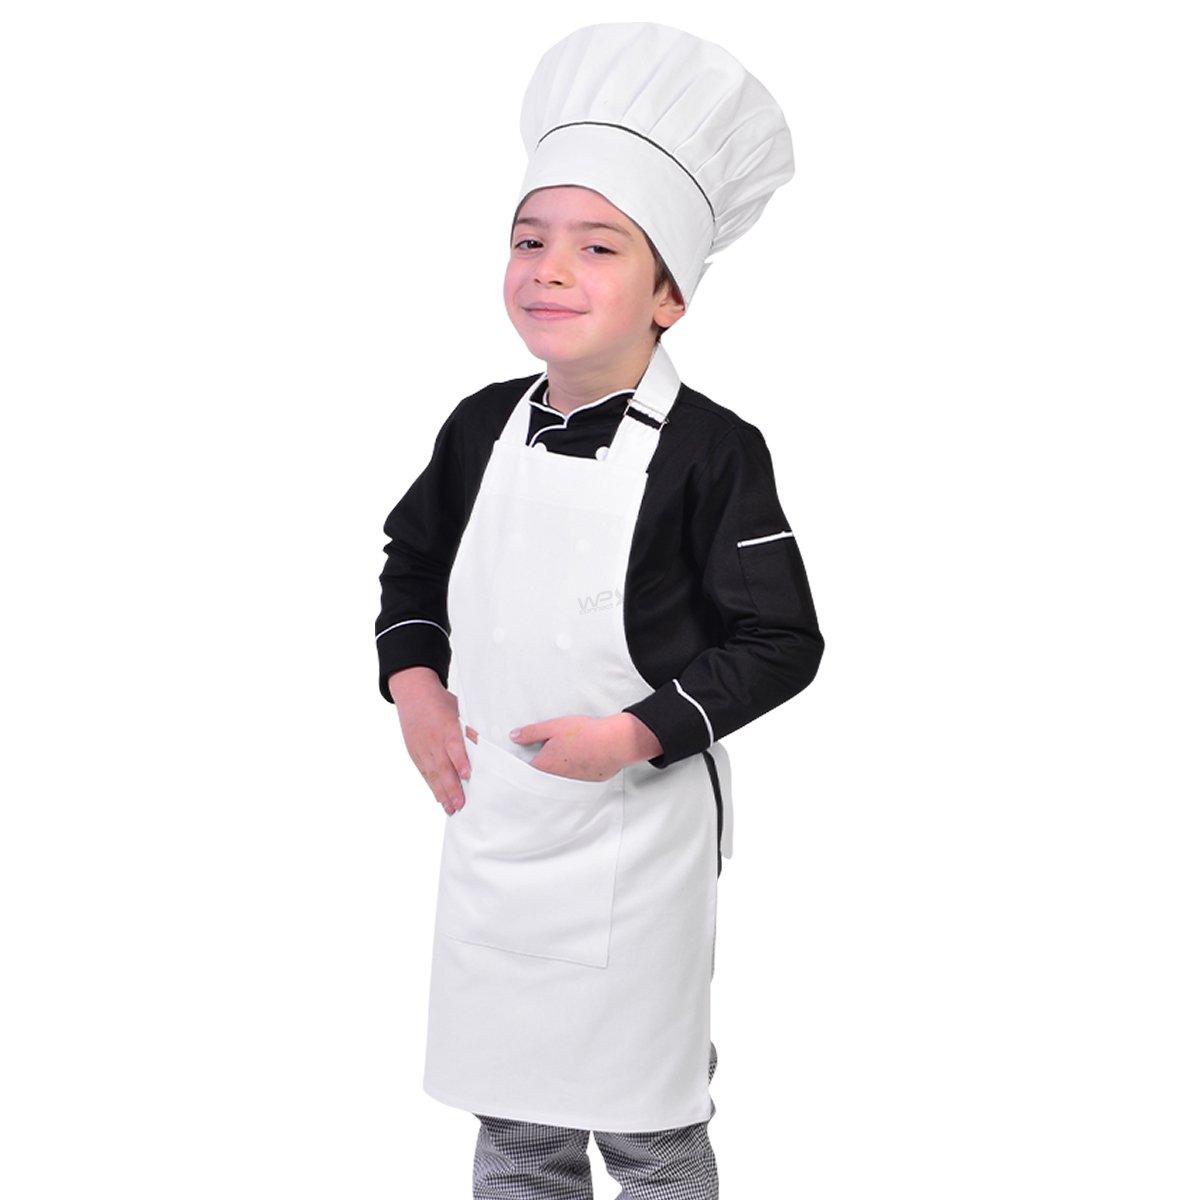 Avental Infantil Chef de Cozinha Corpo Inteiro de 04 a 08 anos - Wp Connect - Branco - Único - 3